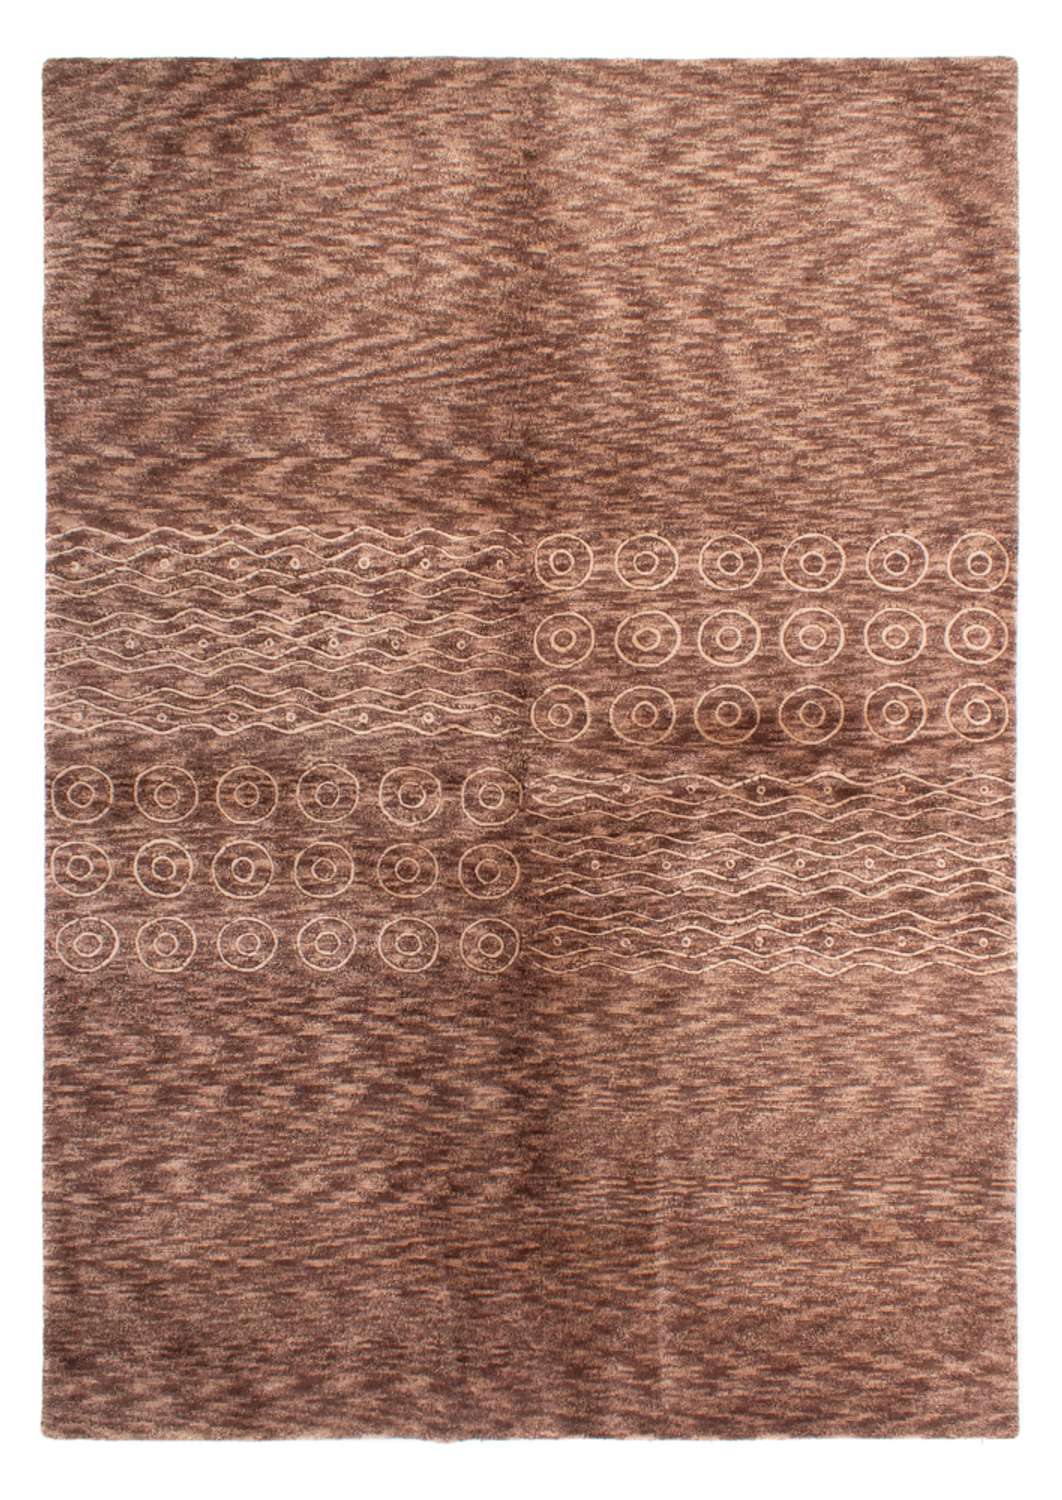 Nepal Rug - 240 x 171 cm - brown